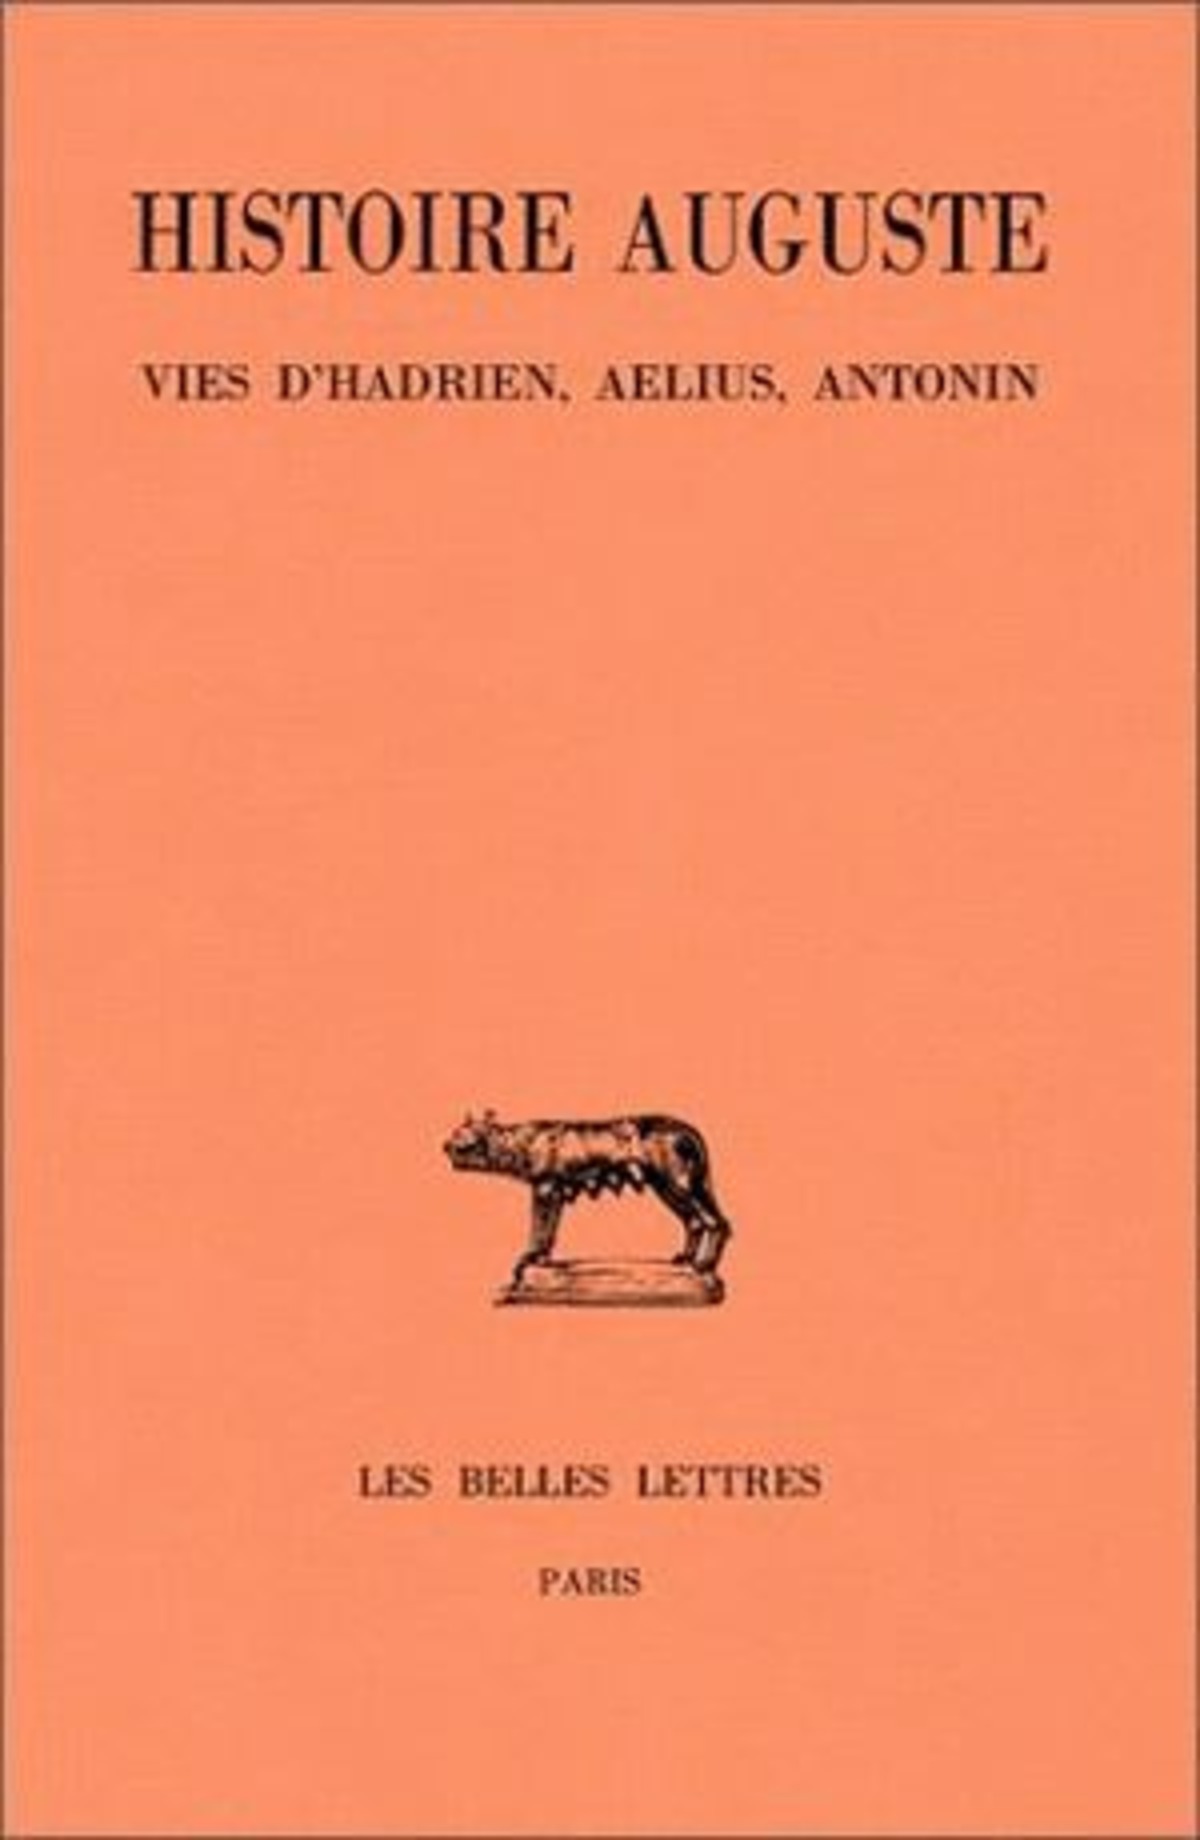 Histoire Auguste. Tome I, 1re partie : Introduction générale. Vies d'Hadrien, Ælius, Antonin